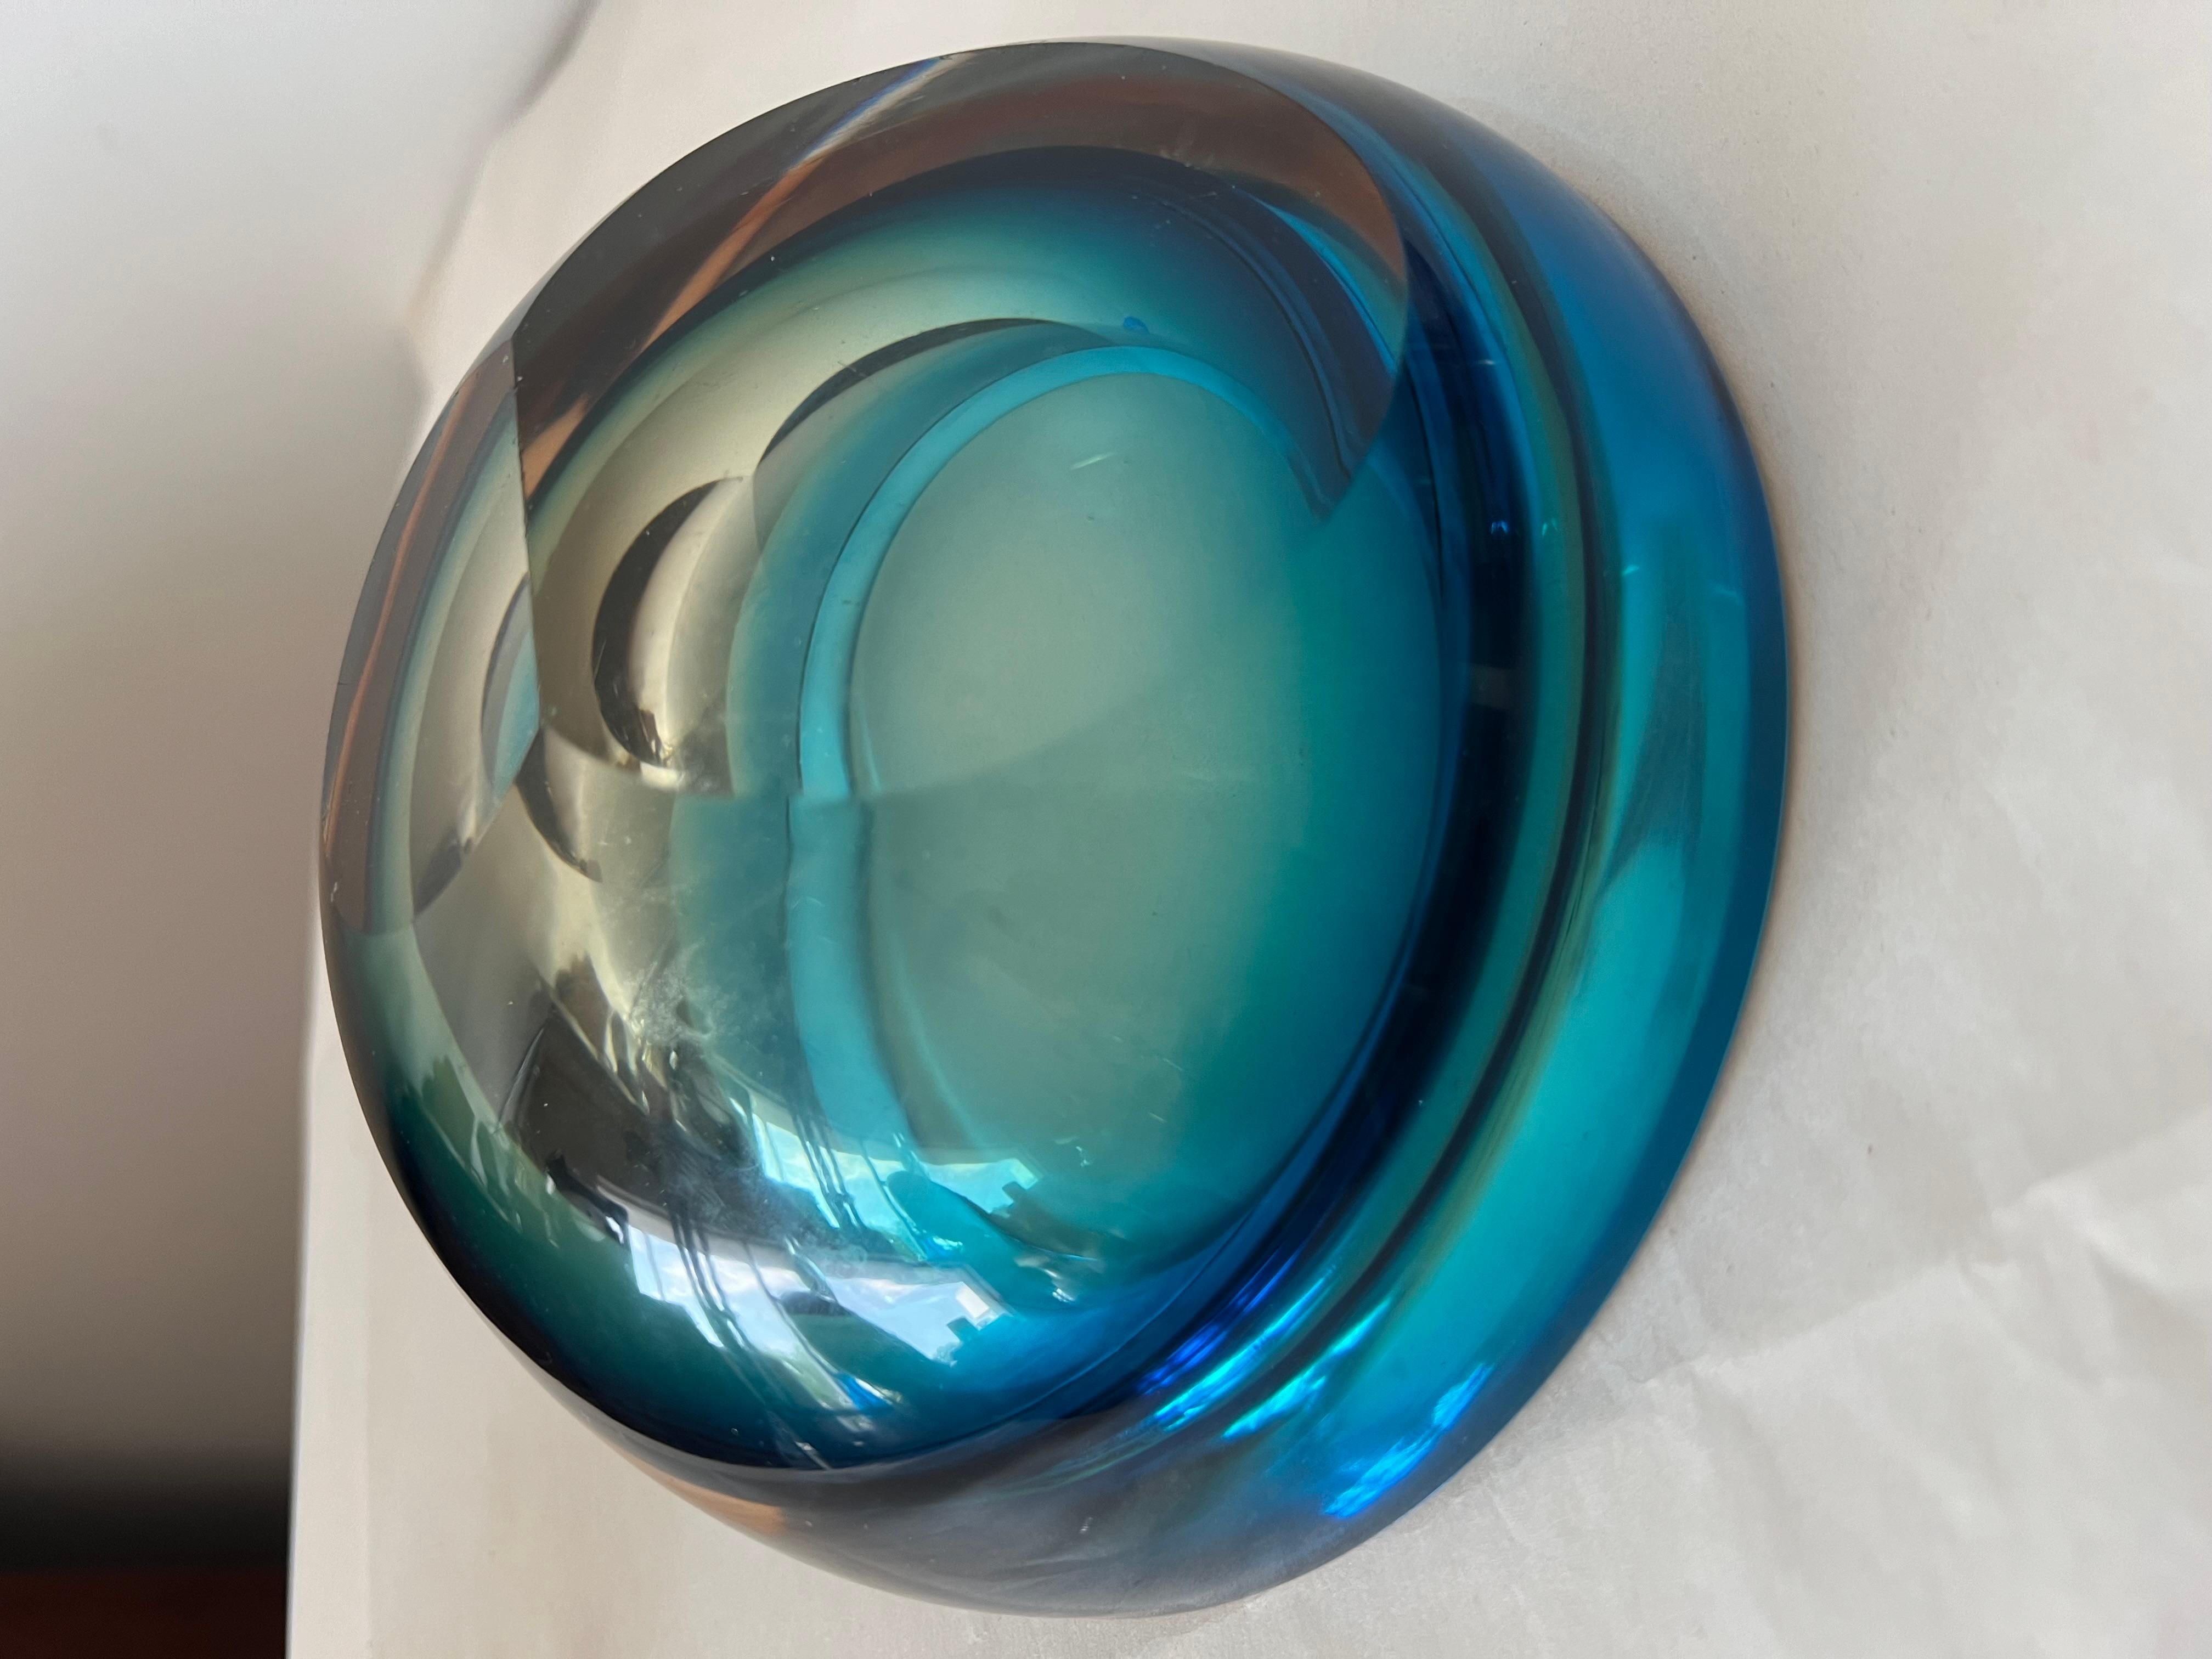 Ein interessantes Stück schweres Glas, wahrscheinlich von Flavio Poli, Murano, hergestellt. Konzentrische Kreise in verschiedenen Farben. Der Sockel ist in zwei Winkeln poliert, so dass er sowohl schräg als auch horizontal aufgestellt werden kann. 